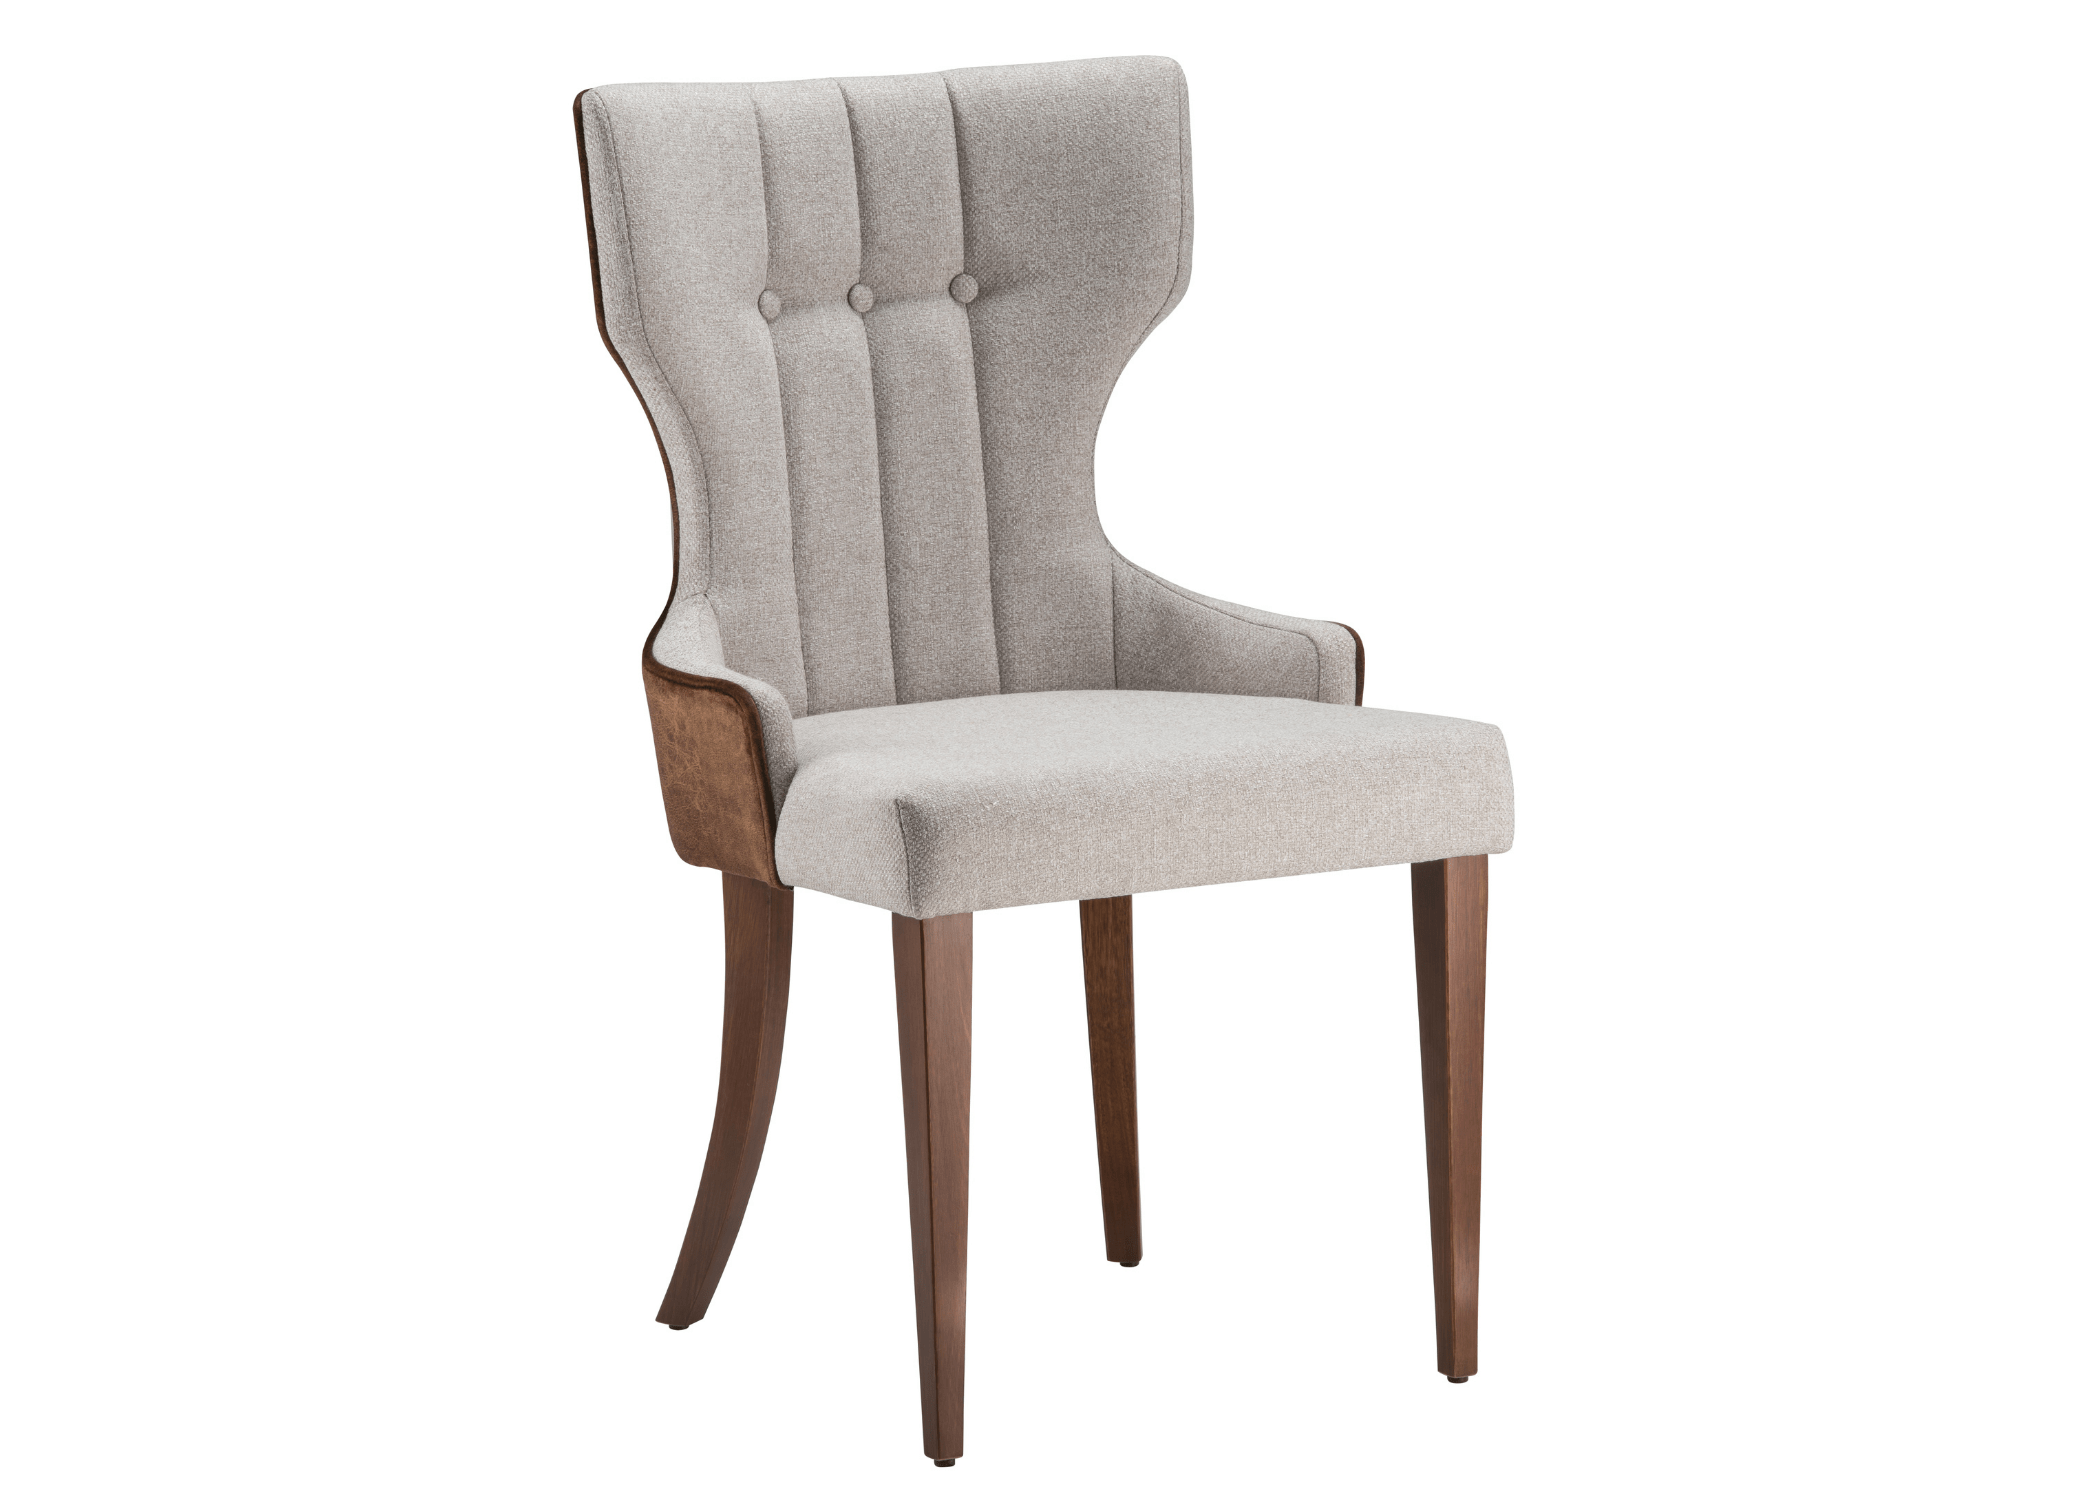 Design contemporâneo: elegante e minimalista na Cadeira Magic.